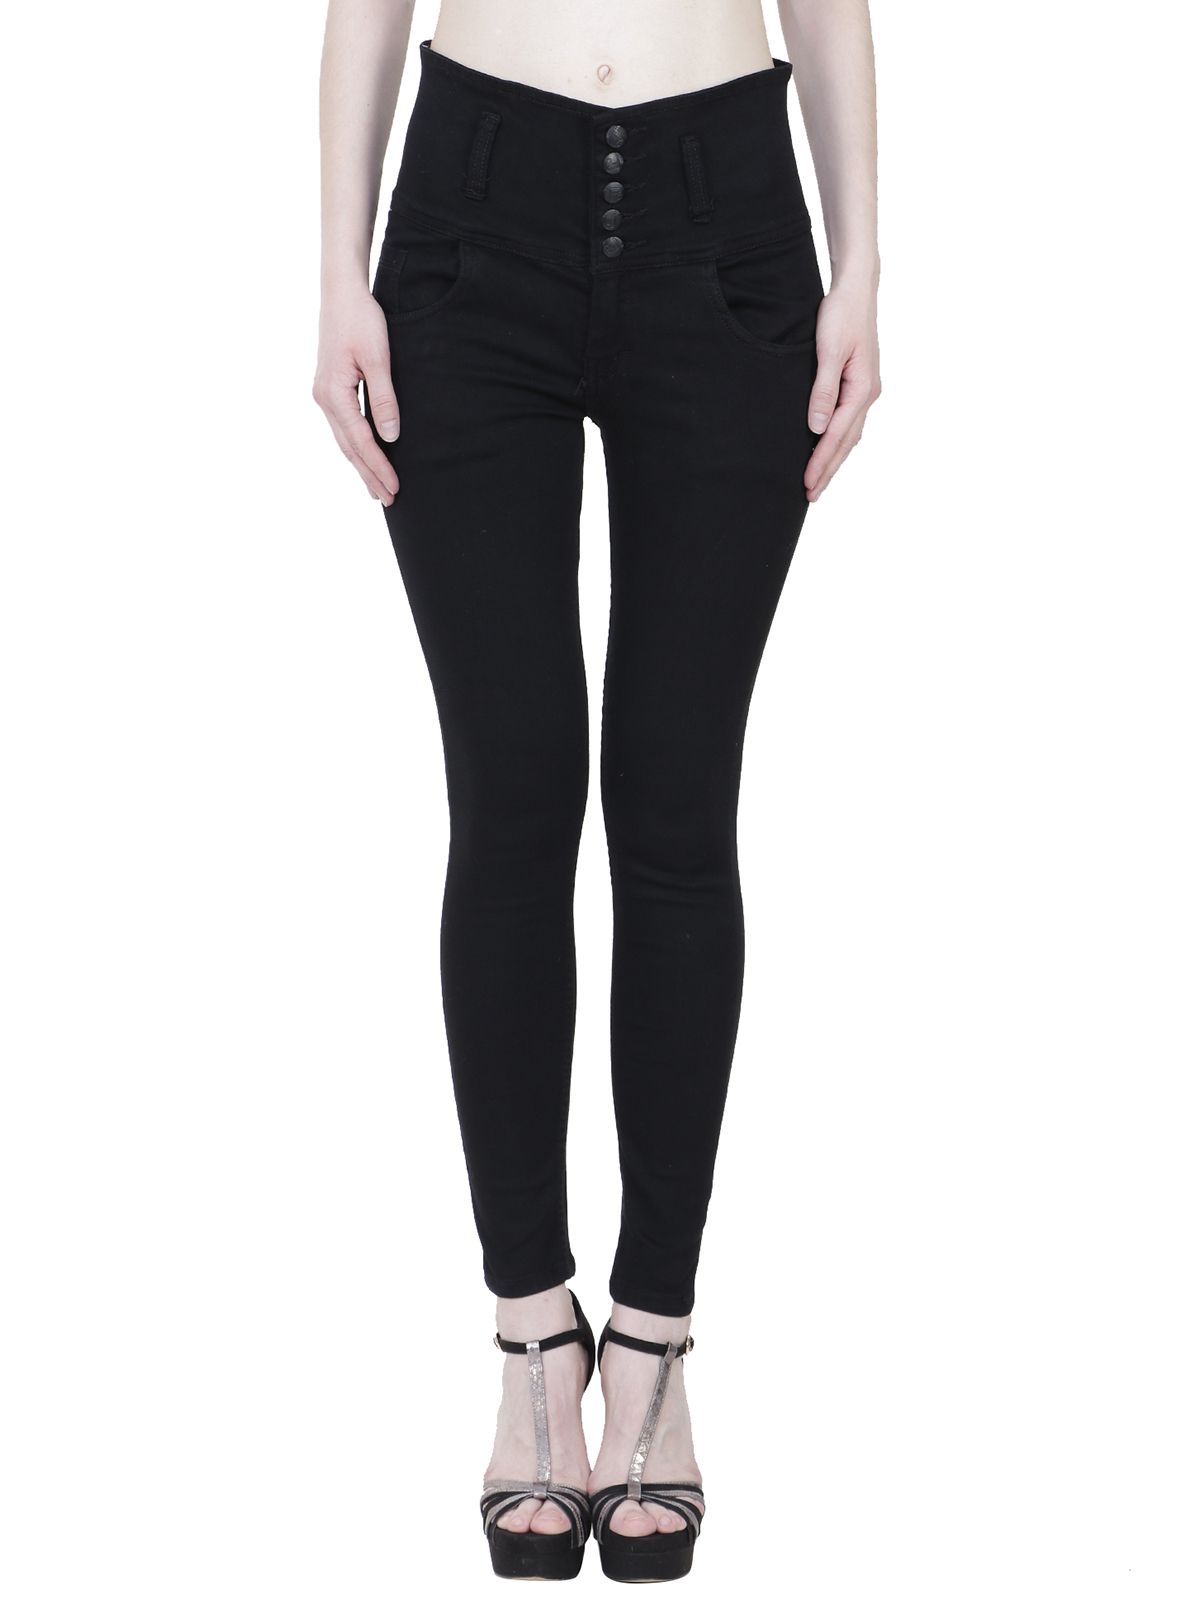 KA Fashion Denim Jeans - Black - Buy KA Fashion Denim Jeans - Black ...